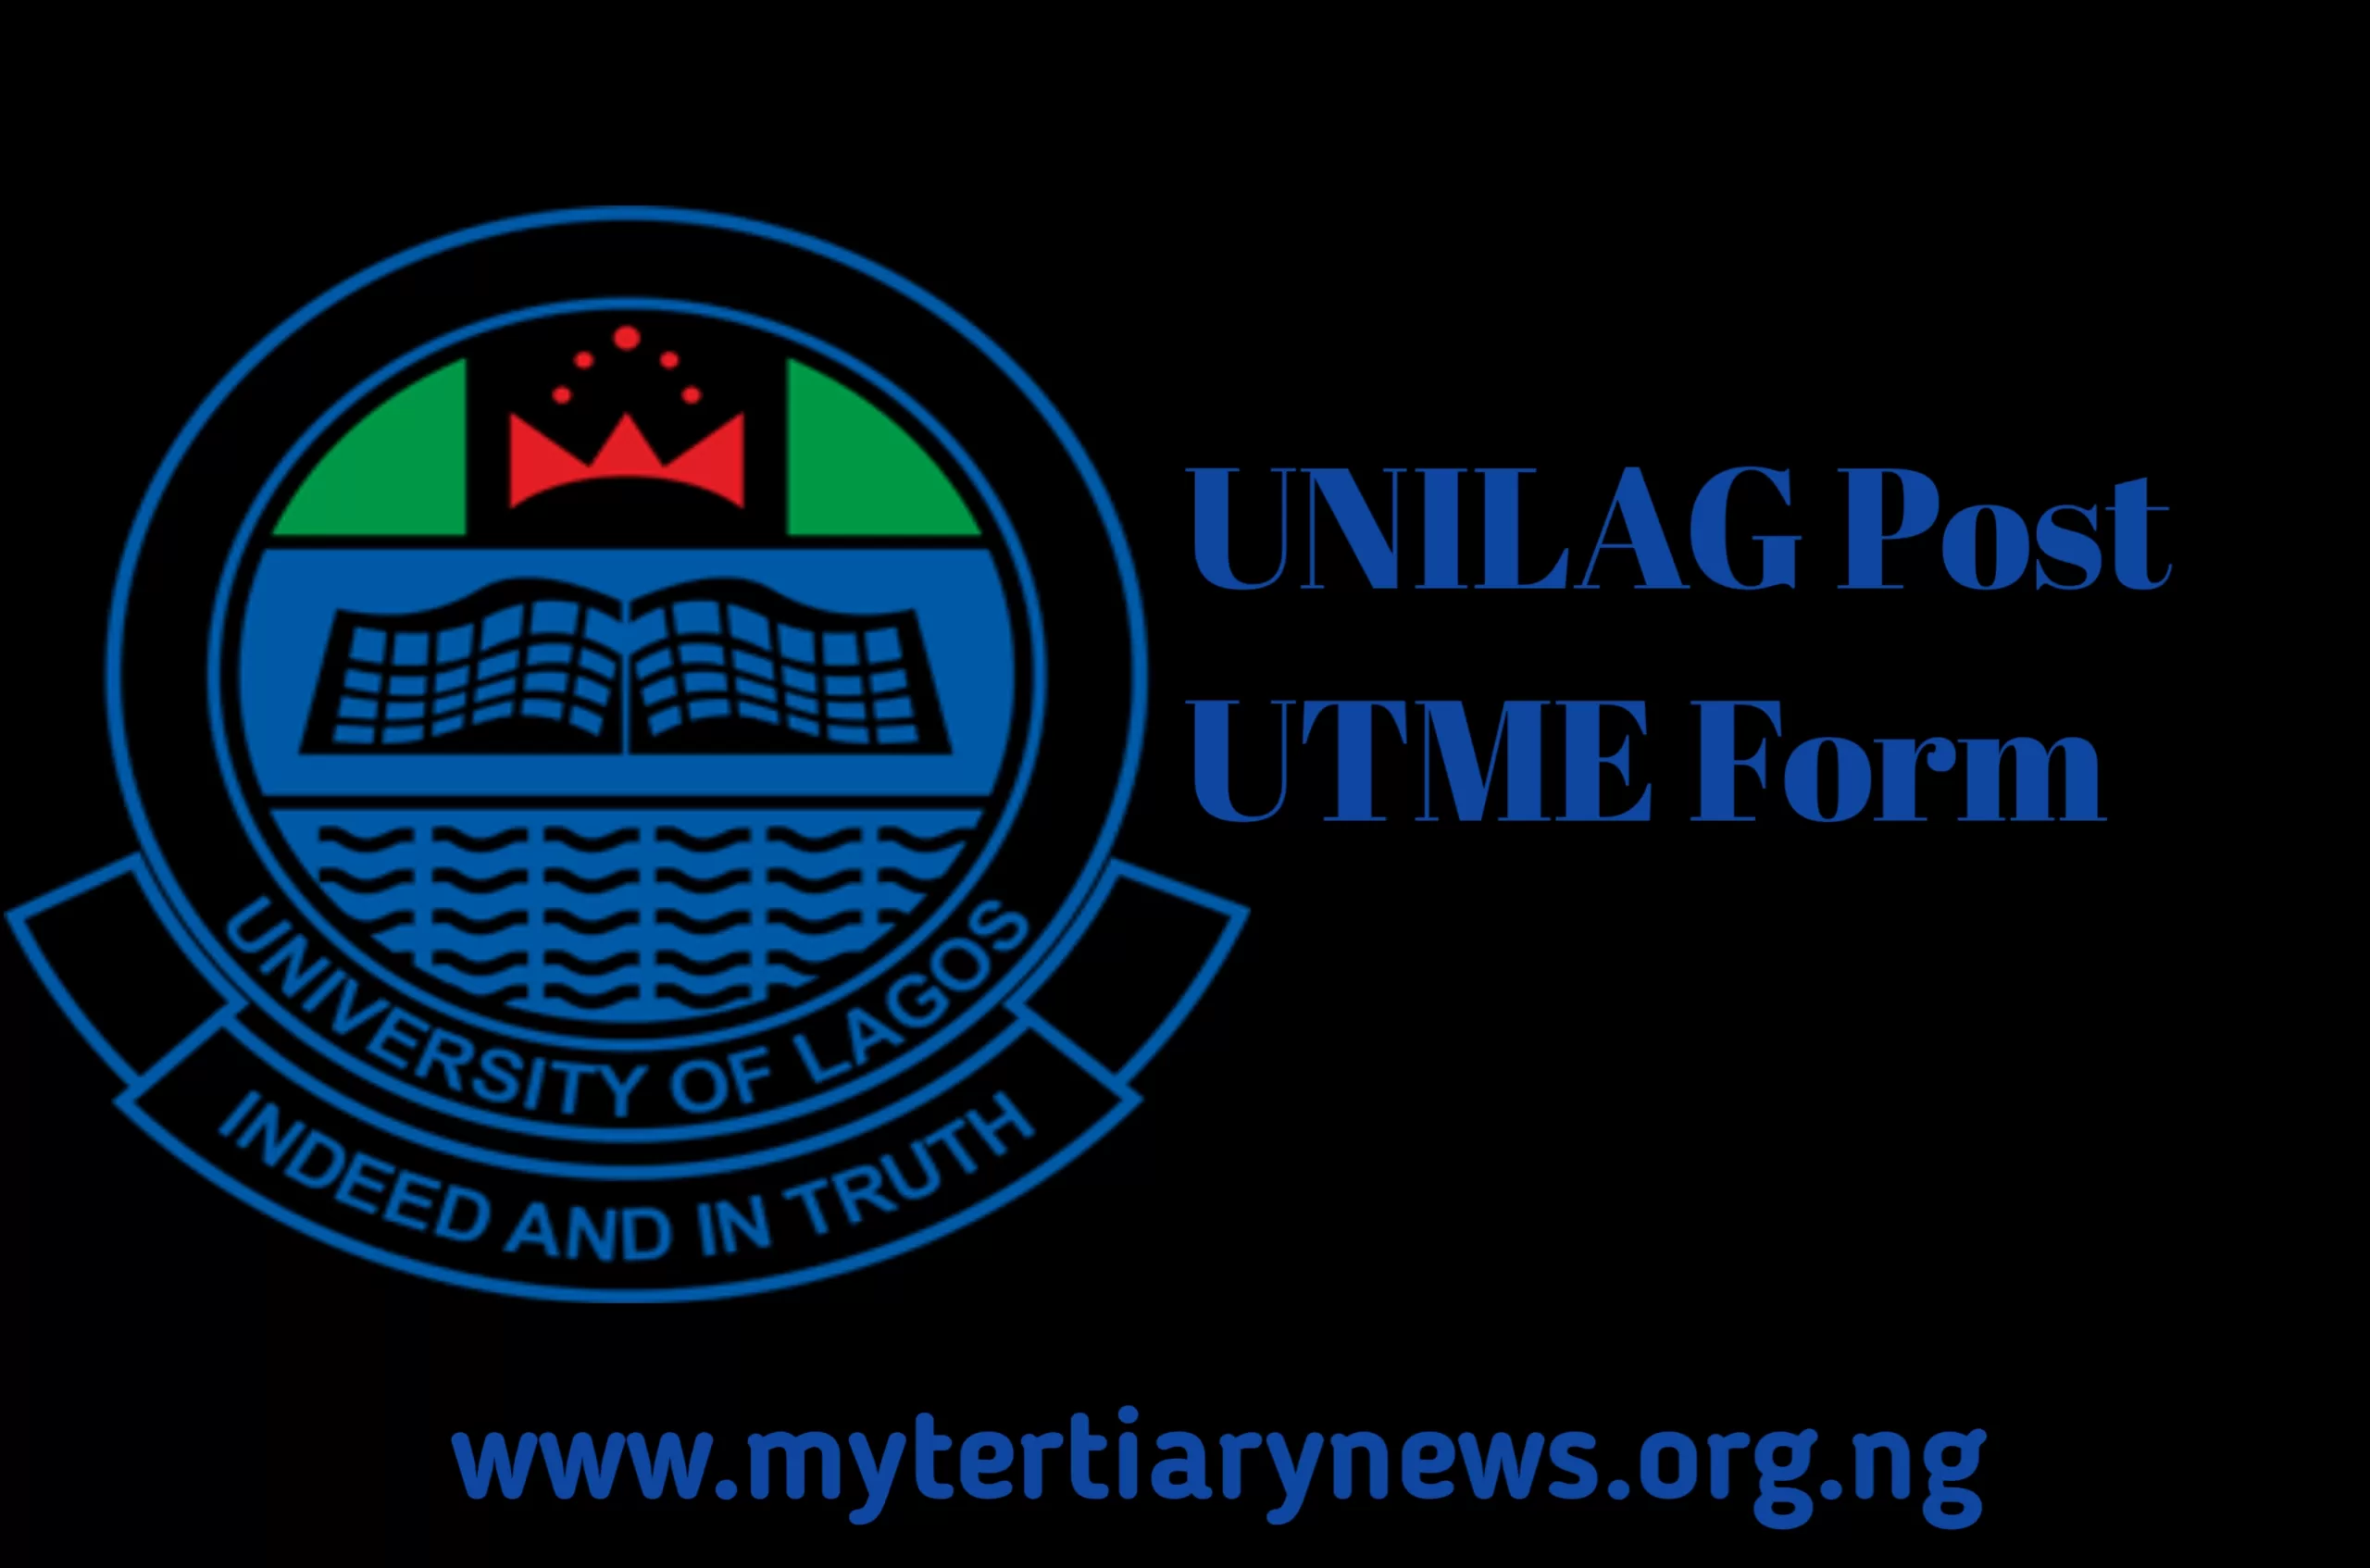 UNILAG Image || UNILAG Post UTME Form